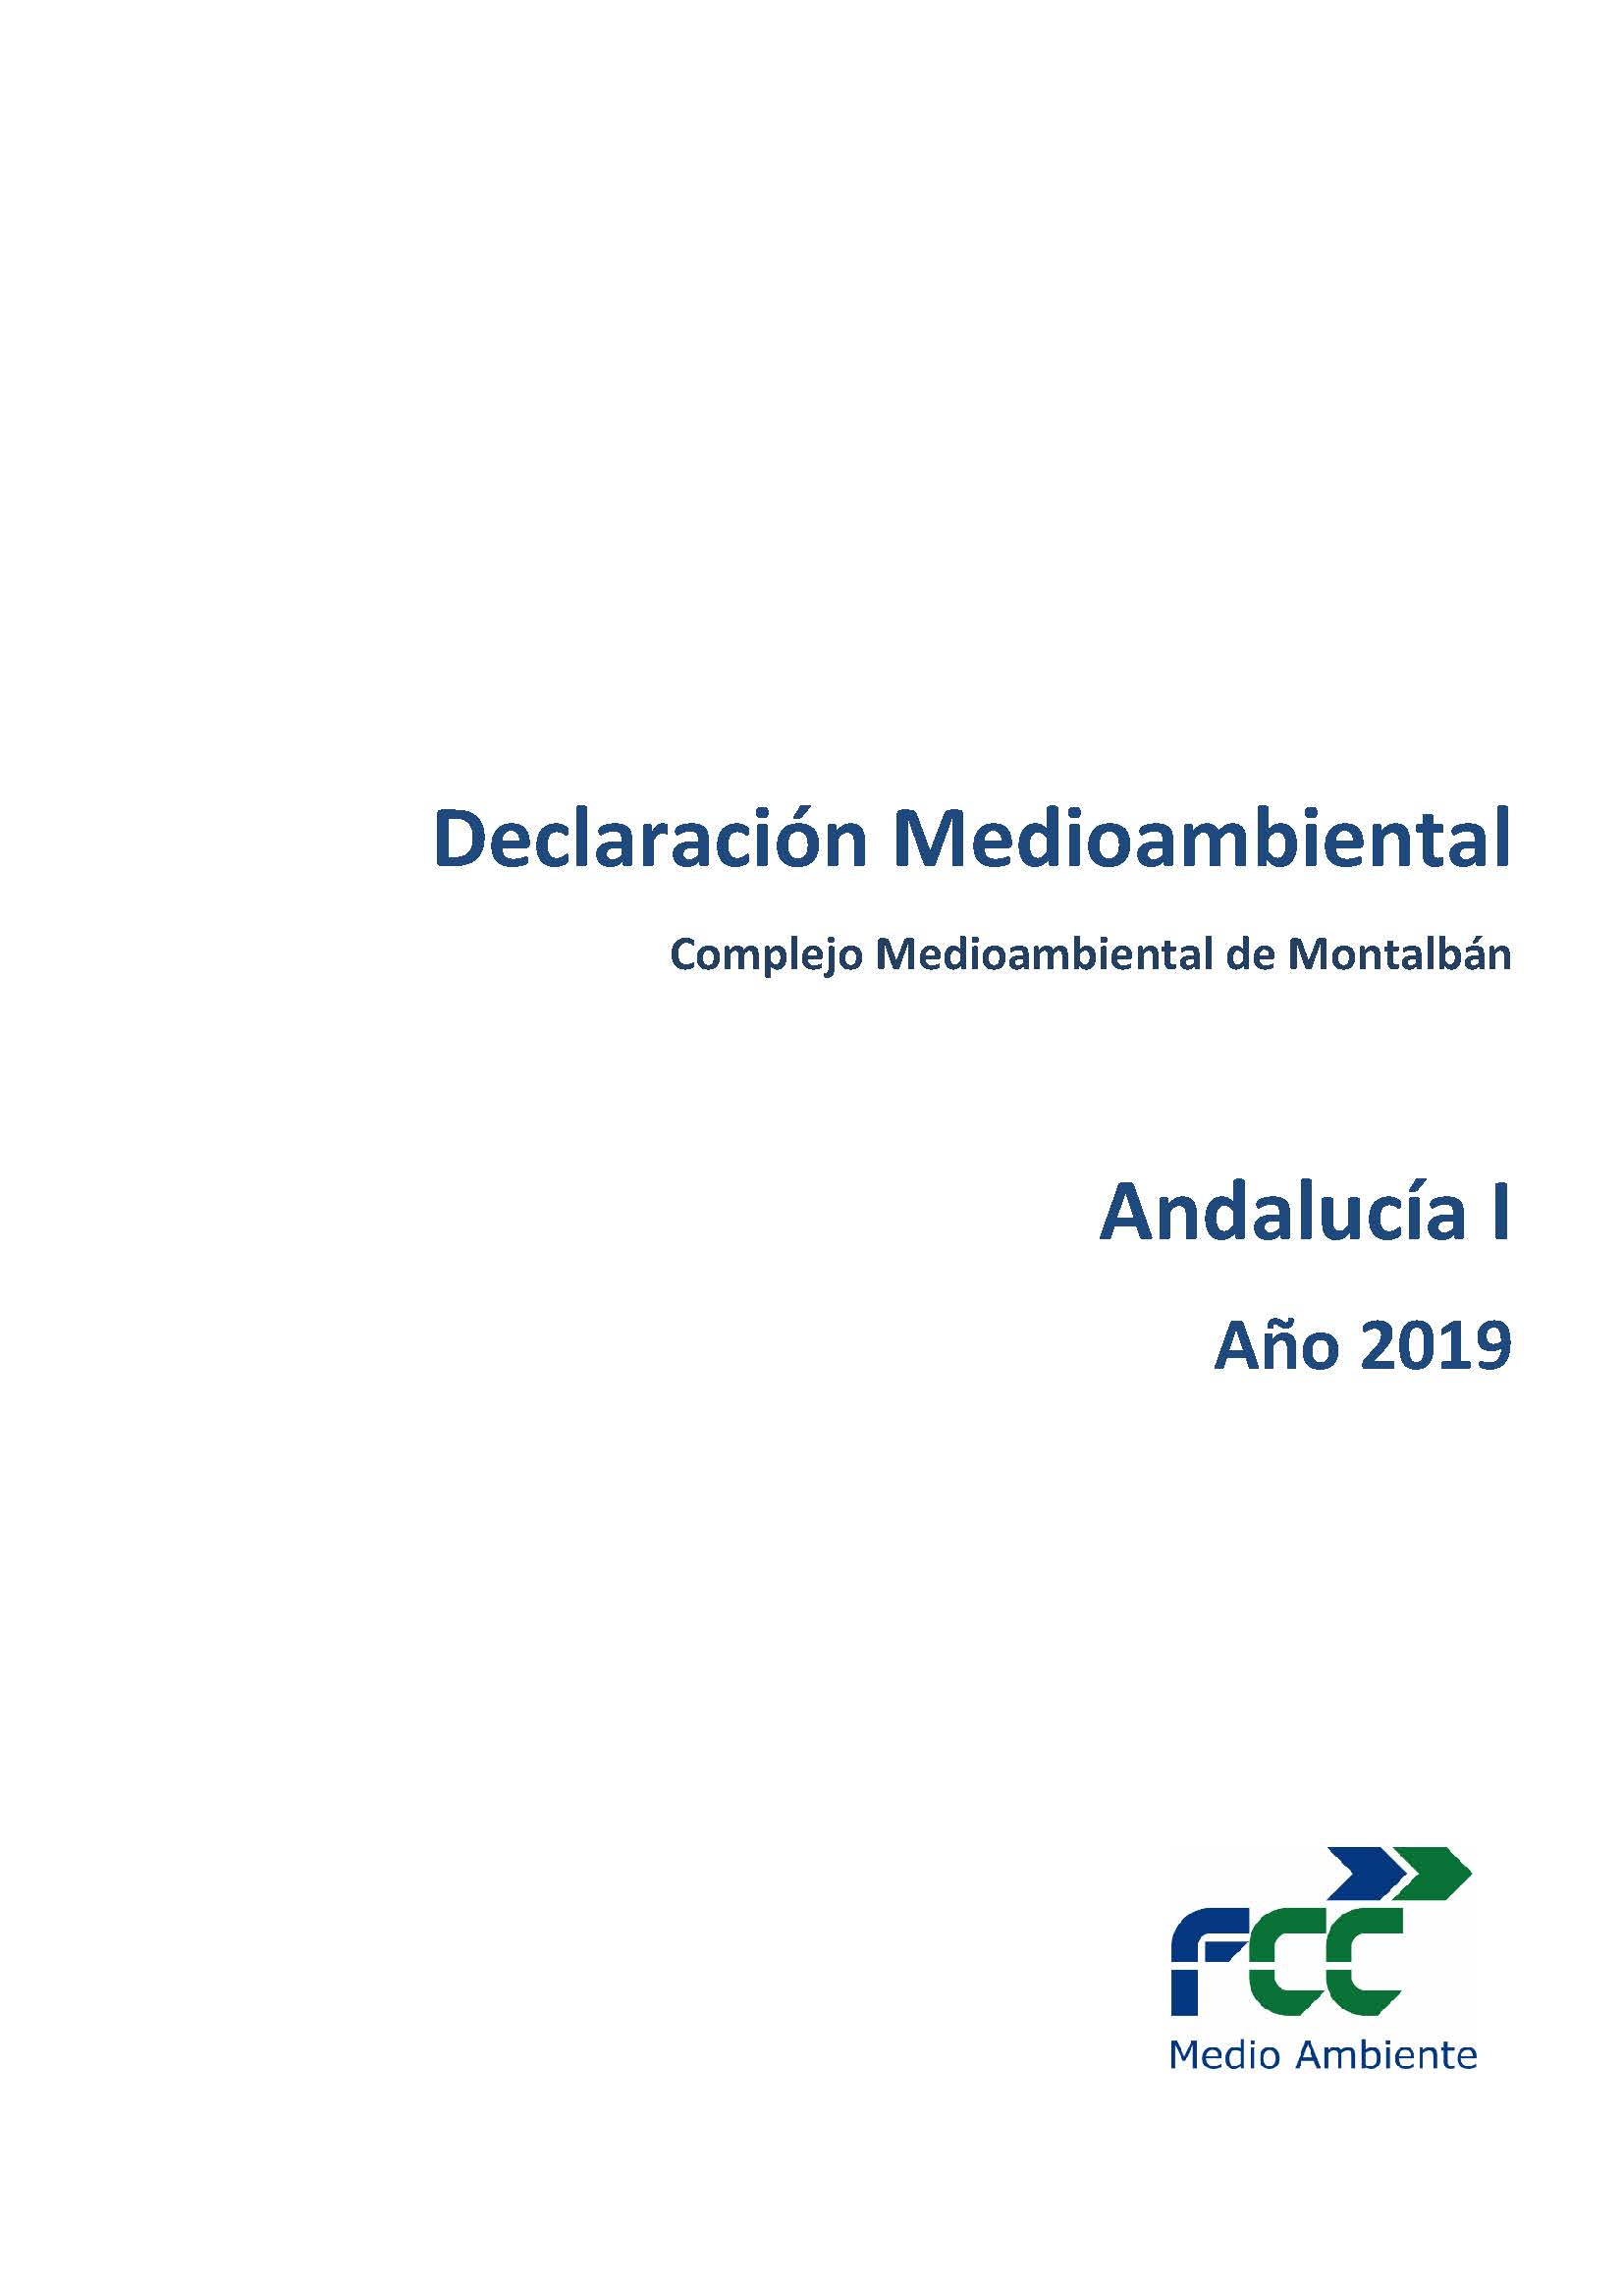 Declaración medioambiental FCC MEDIO AMBIENTE MONTALBÁN firmado